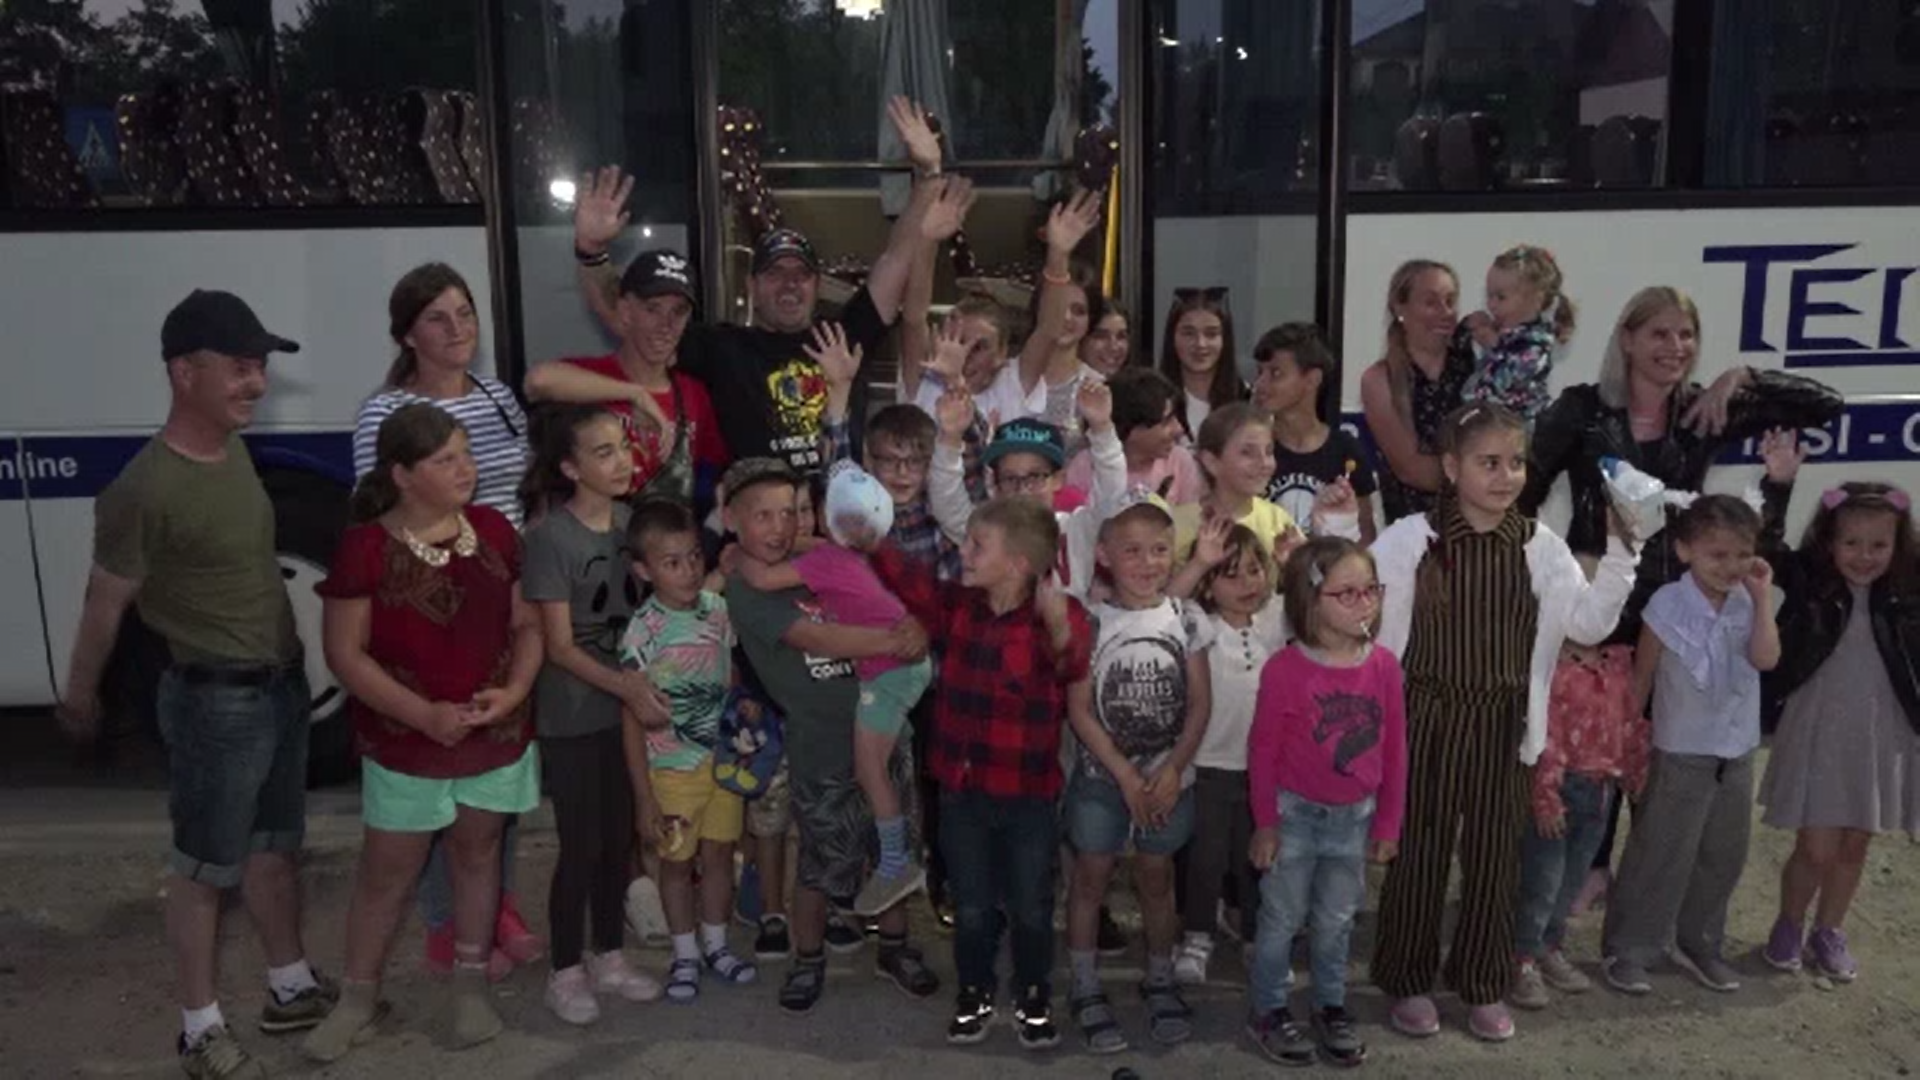 Bucurie imensă pentru zeci de copii sărmani din județele Moldovei. Elevii au primit cadou o vacanță la mare